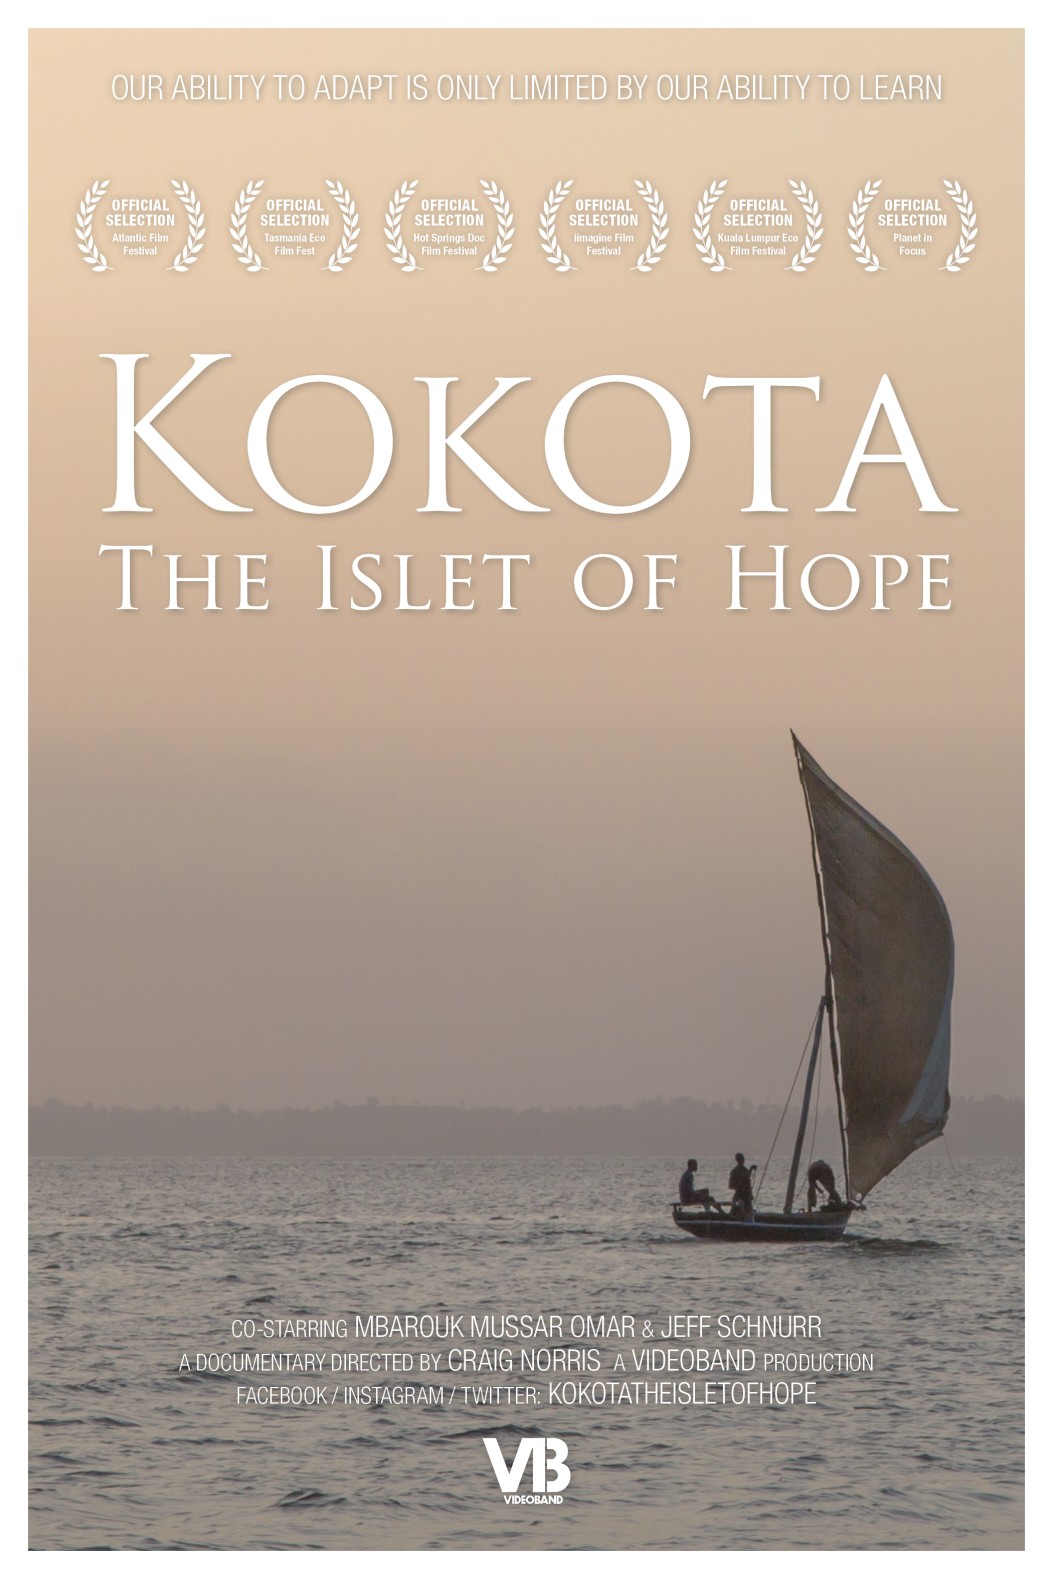 [kokota-the-islet-of-hope--Film-list-image]